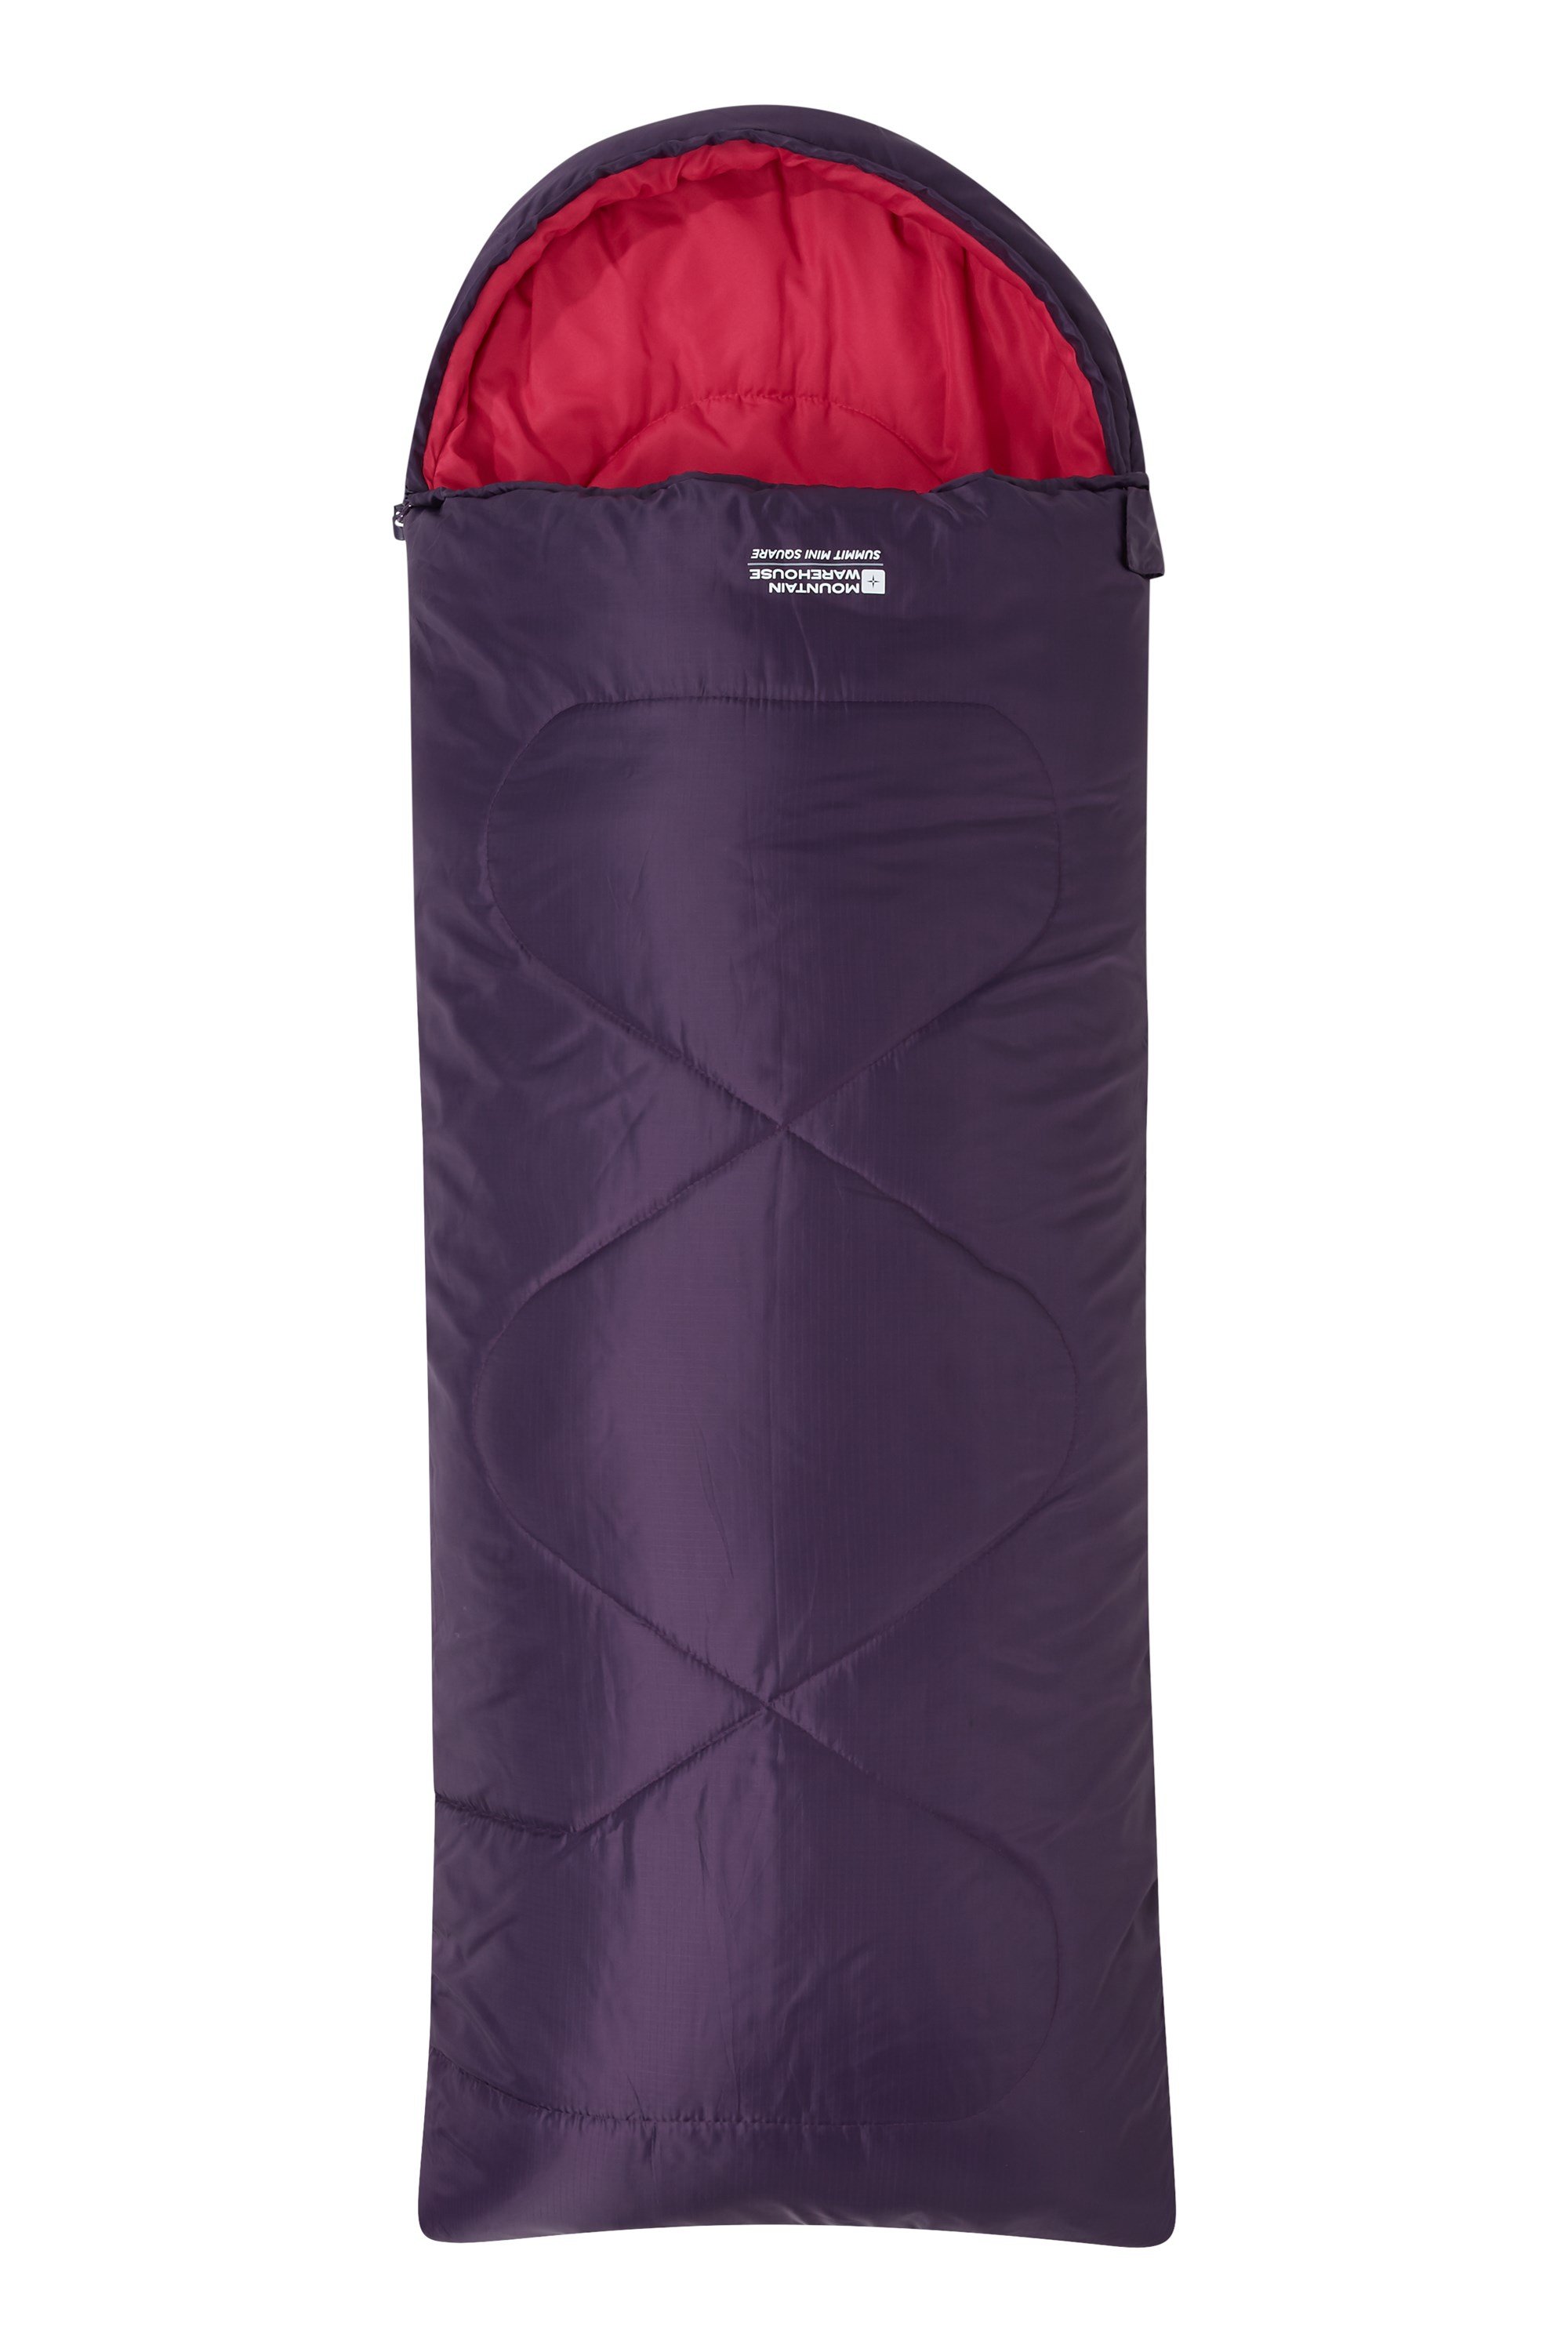 Summit Mini Square Kids Sleeping Bag - Purple